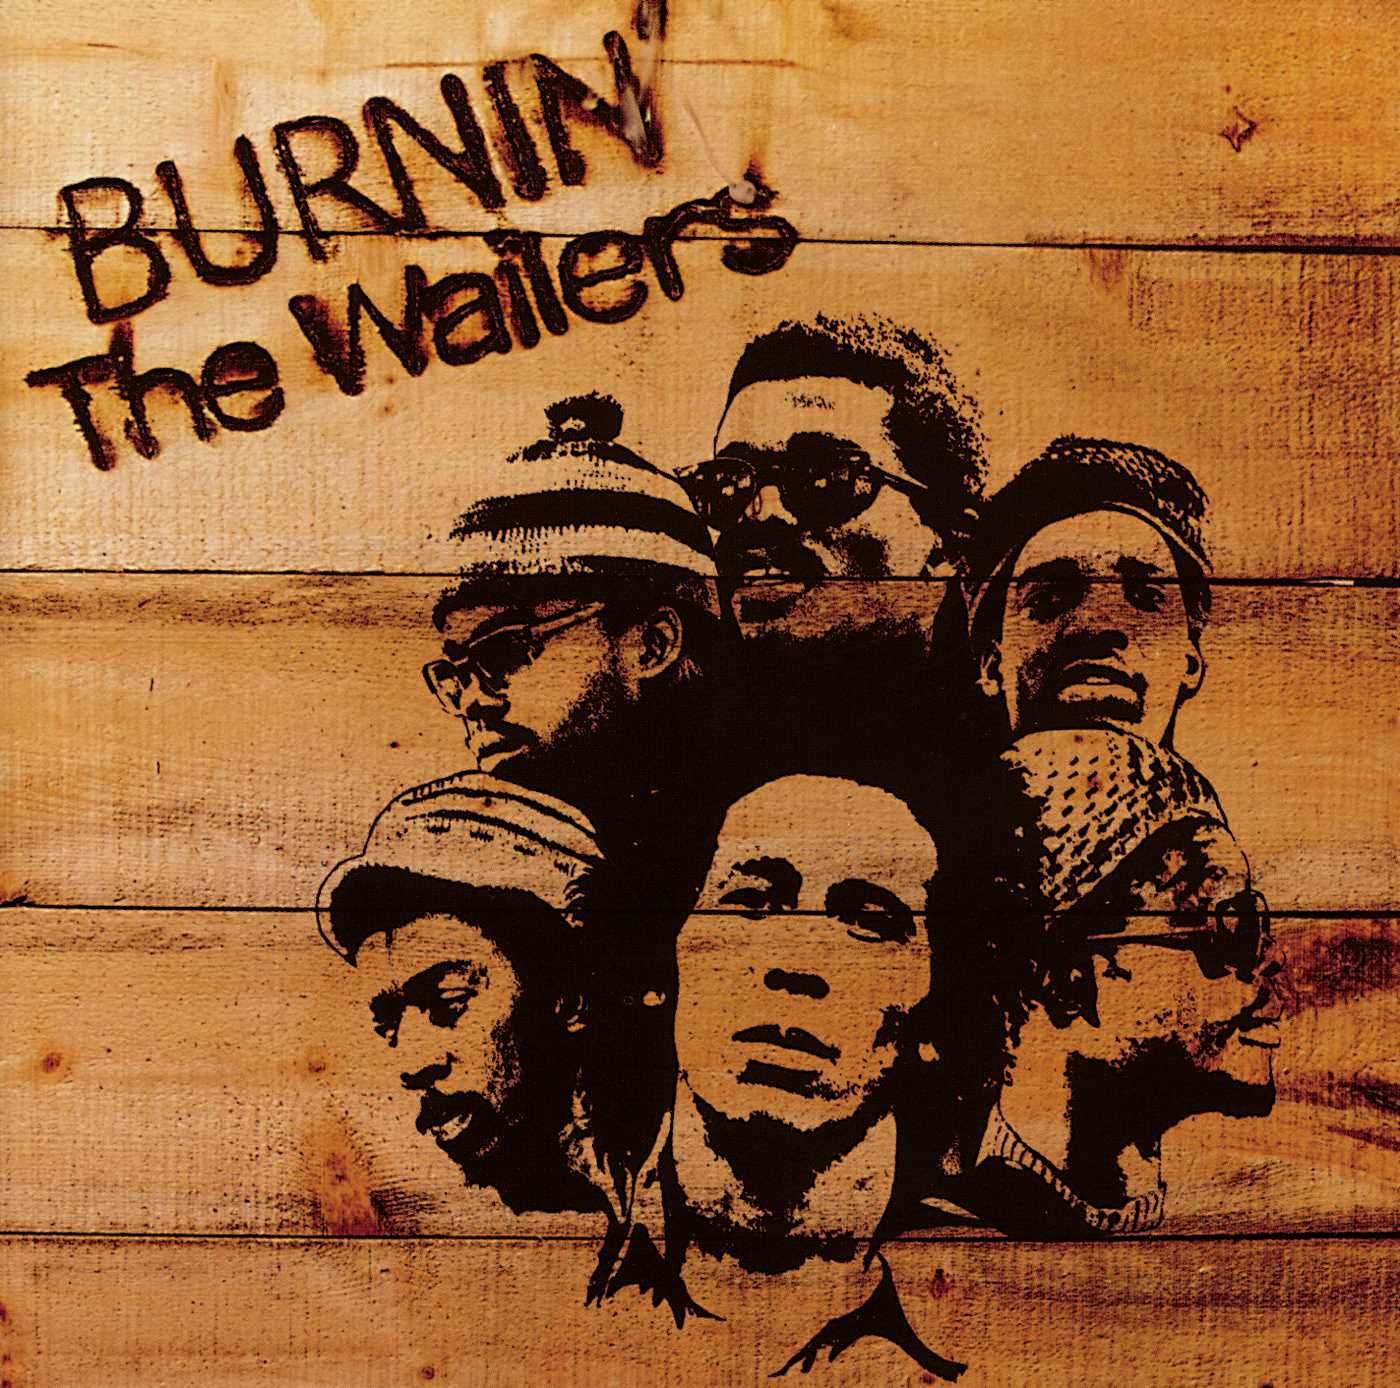 MARLEY, BOB & THE WAILERS ‎– Burnin'